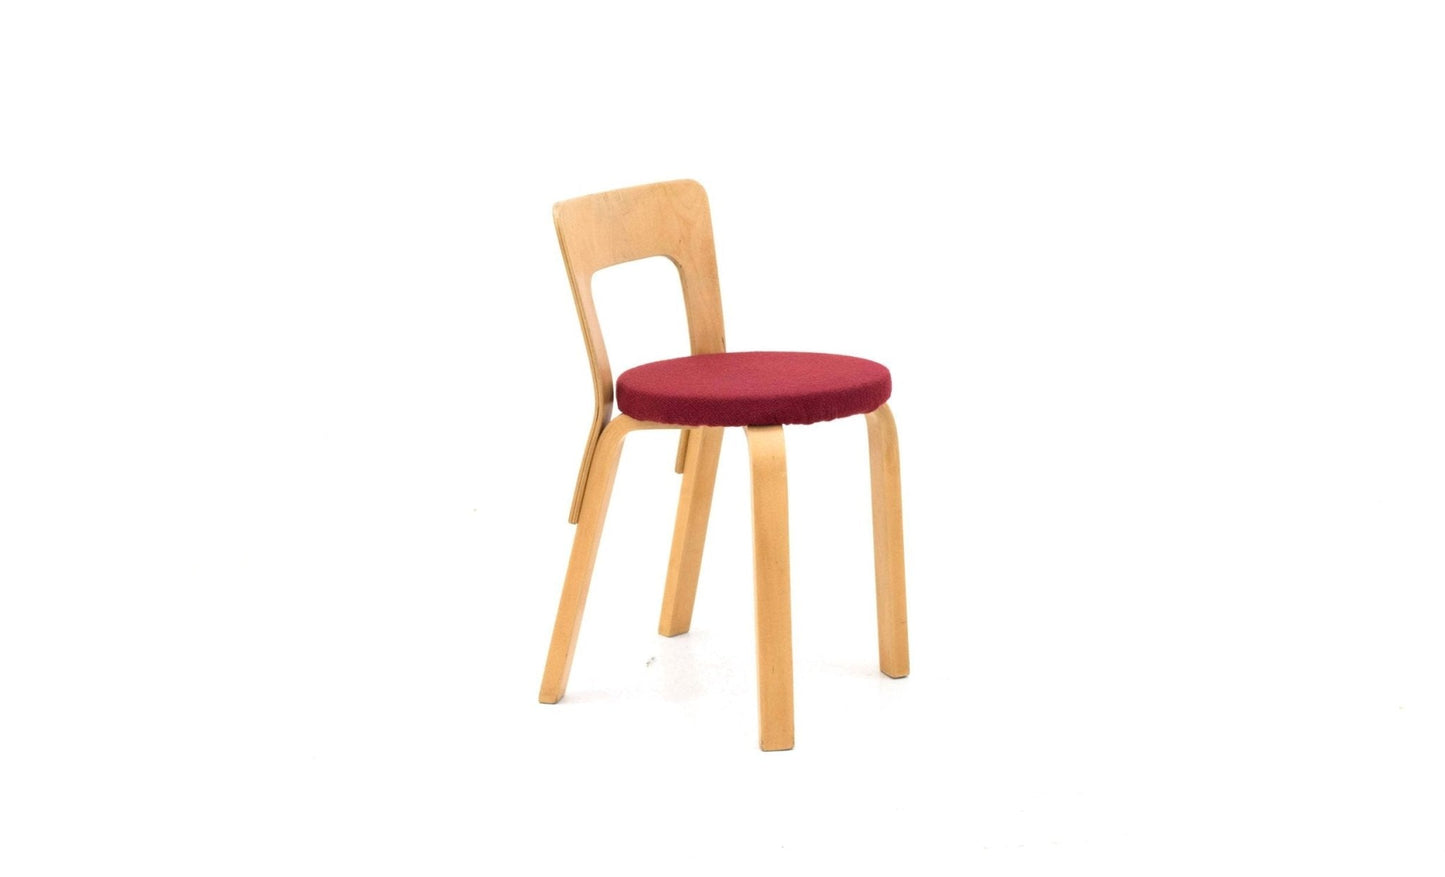 Alvar Aalto Chair 65 von Artek - 2nd home